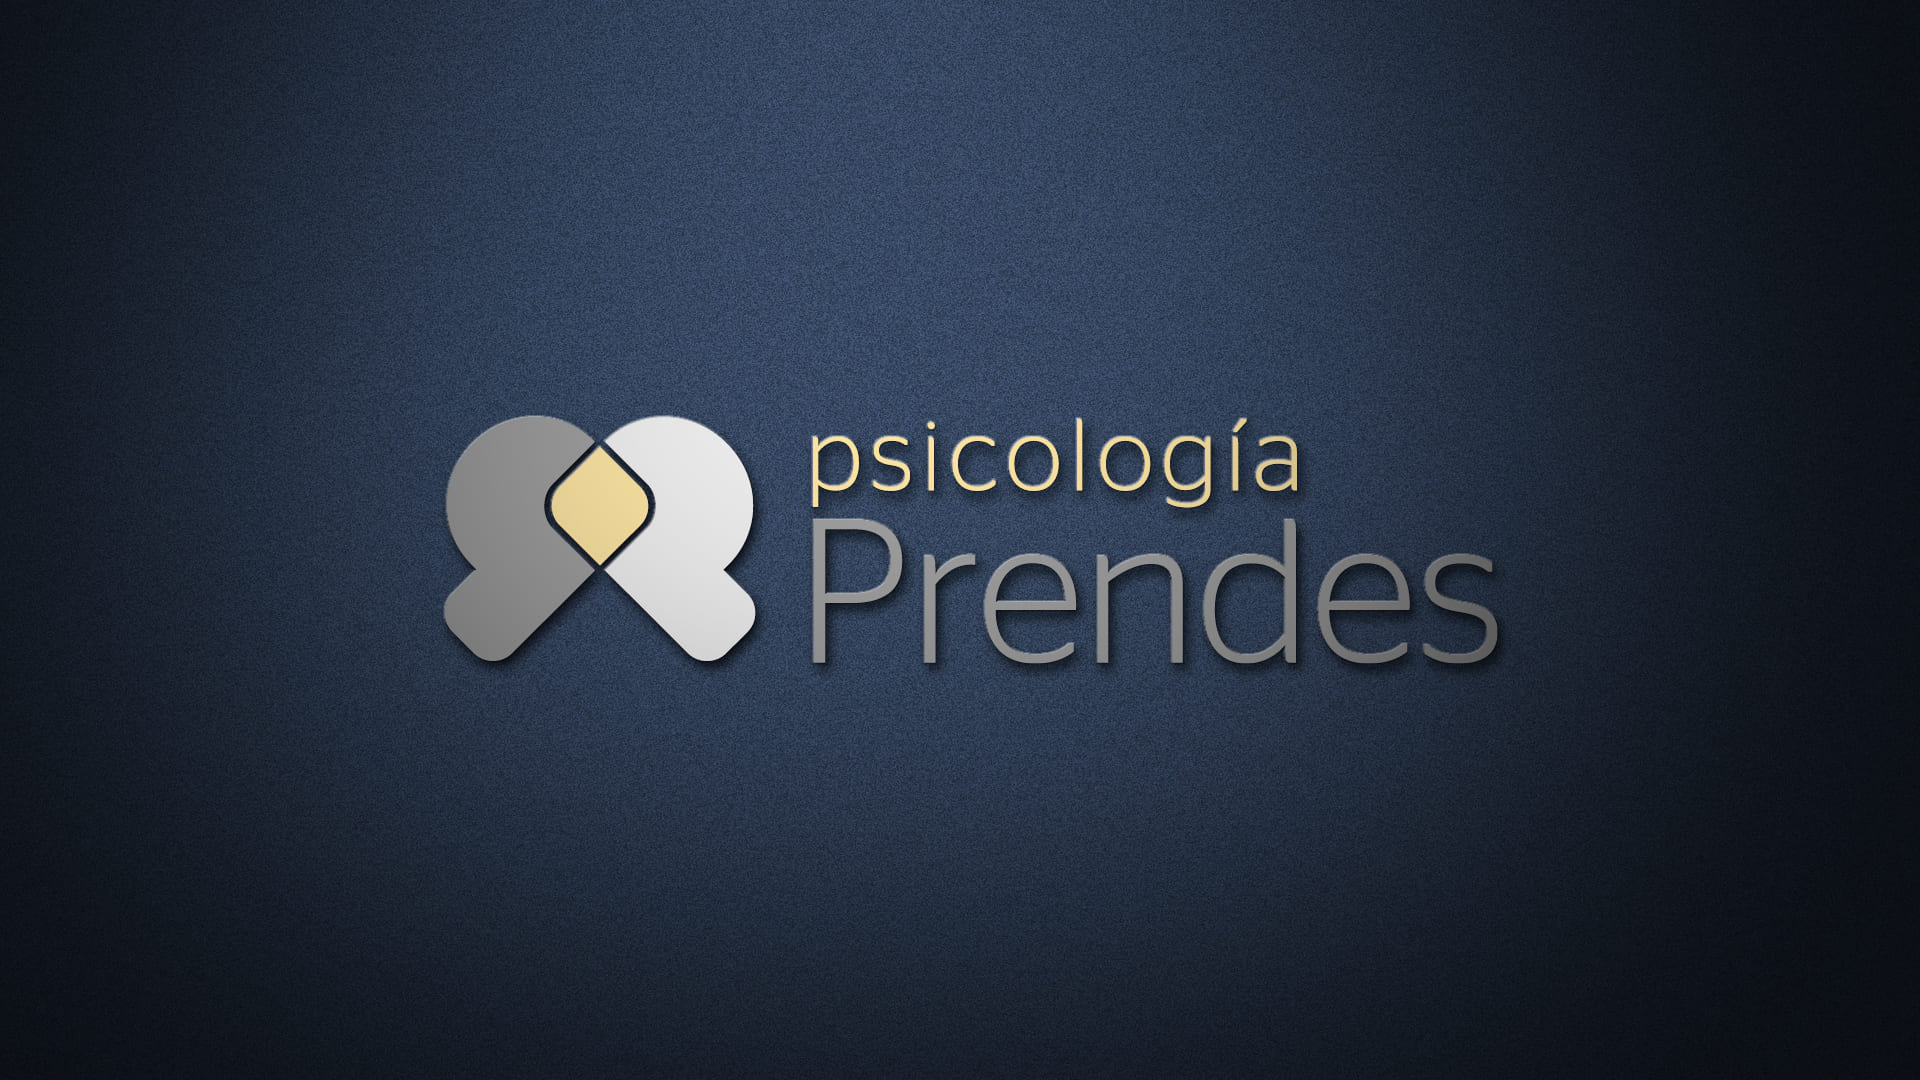 Logotipo de Psicología Prendes en relieve y con fondo oscuro.